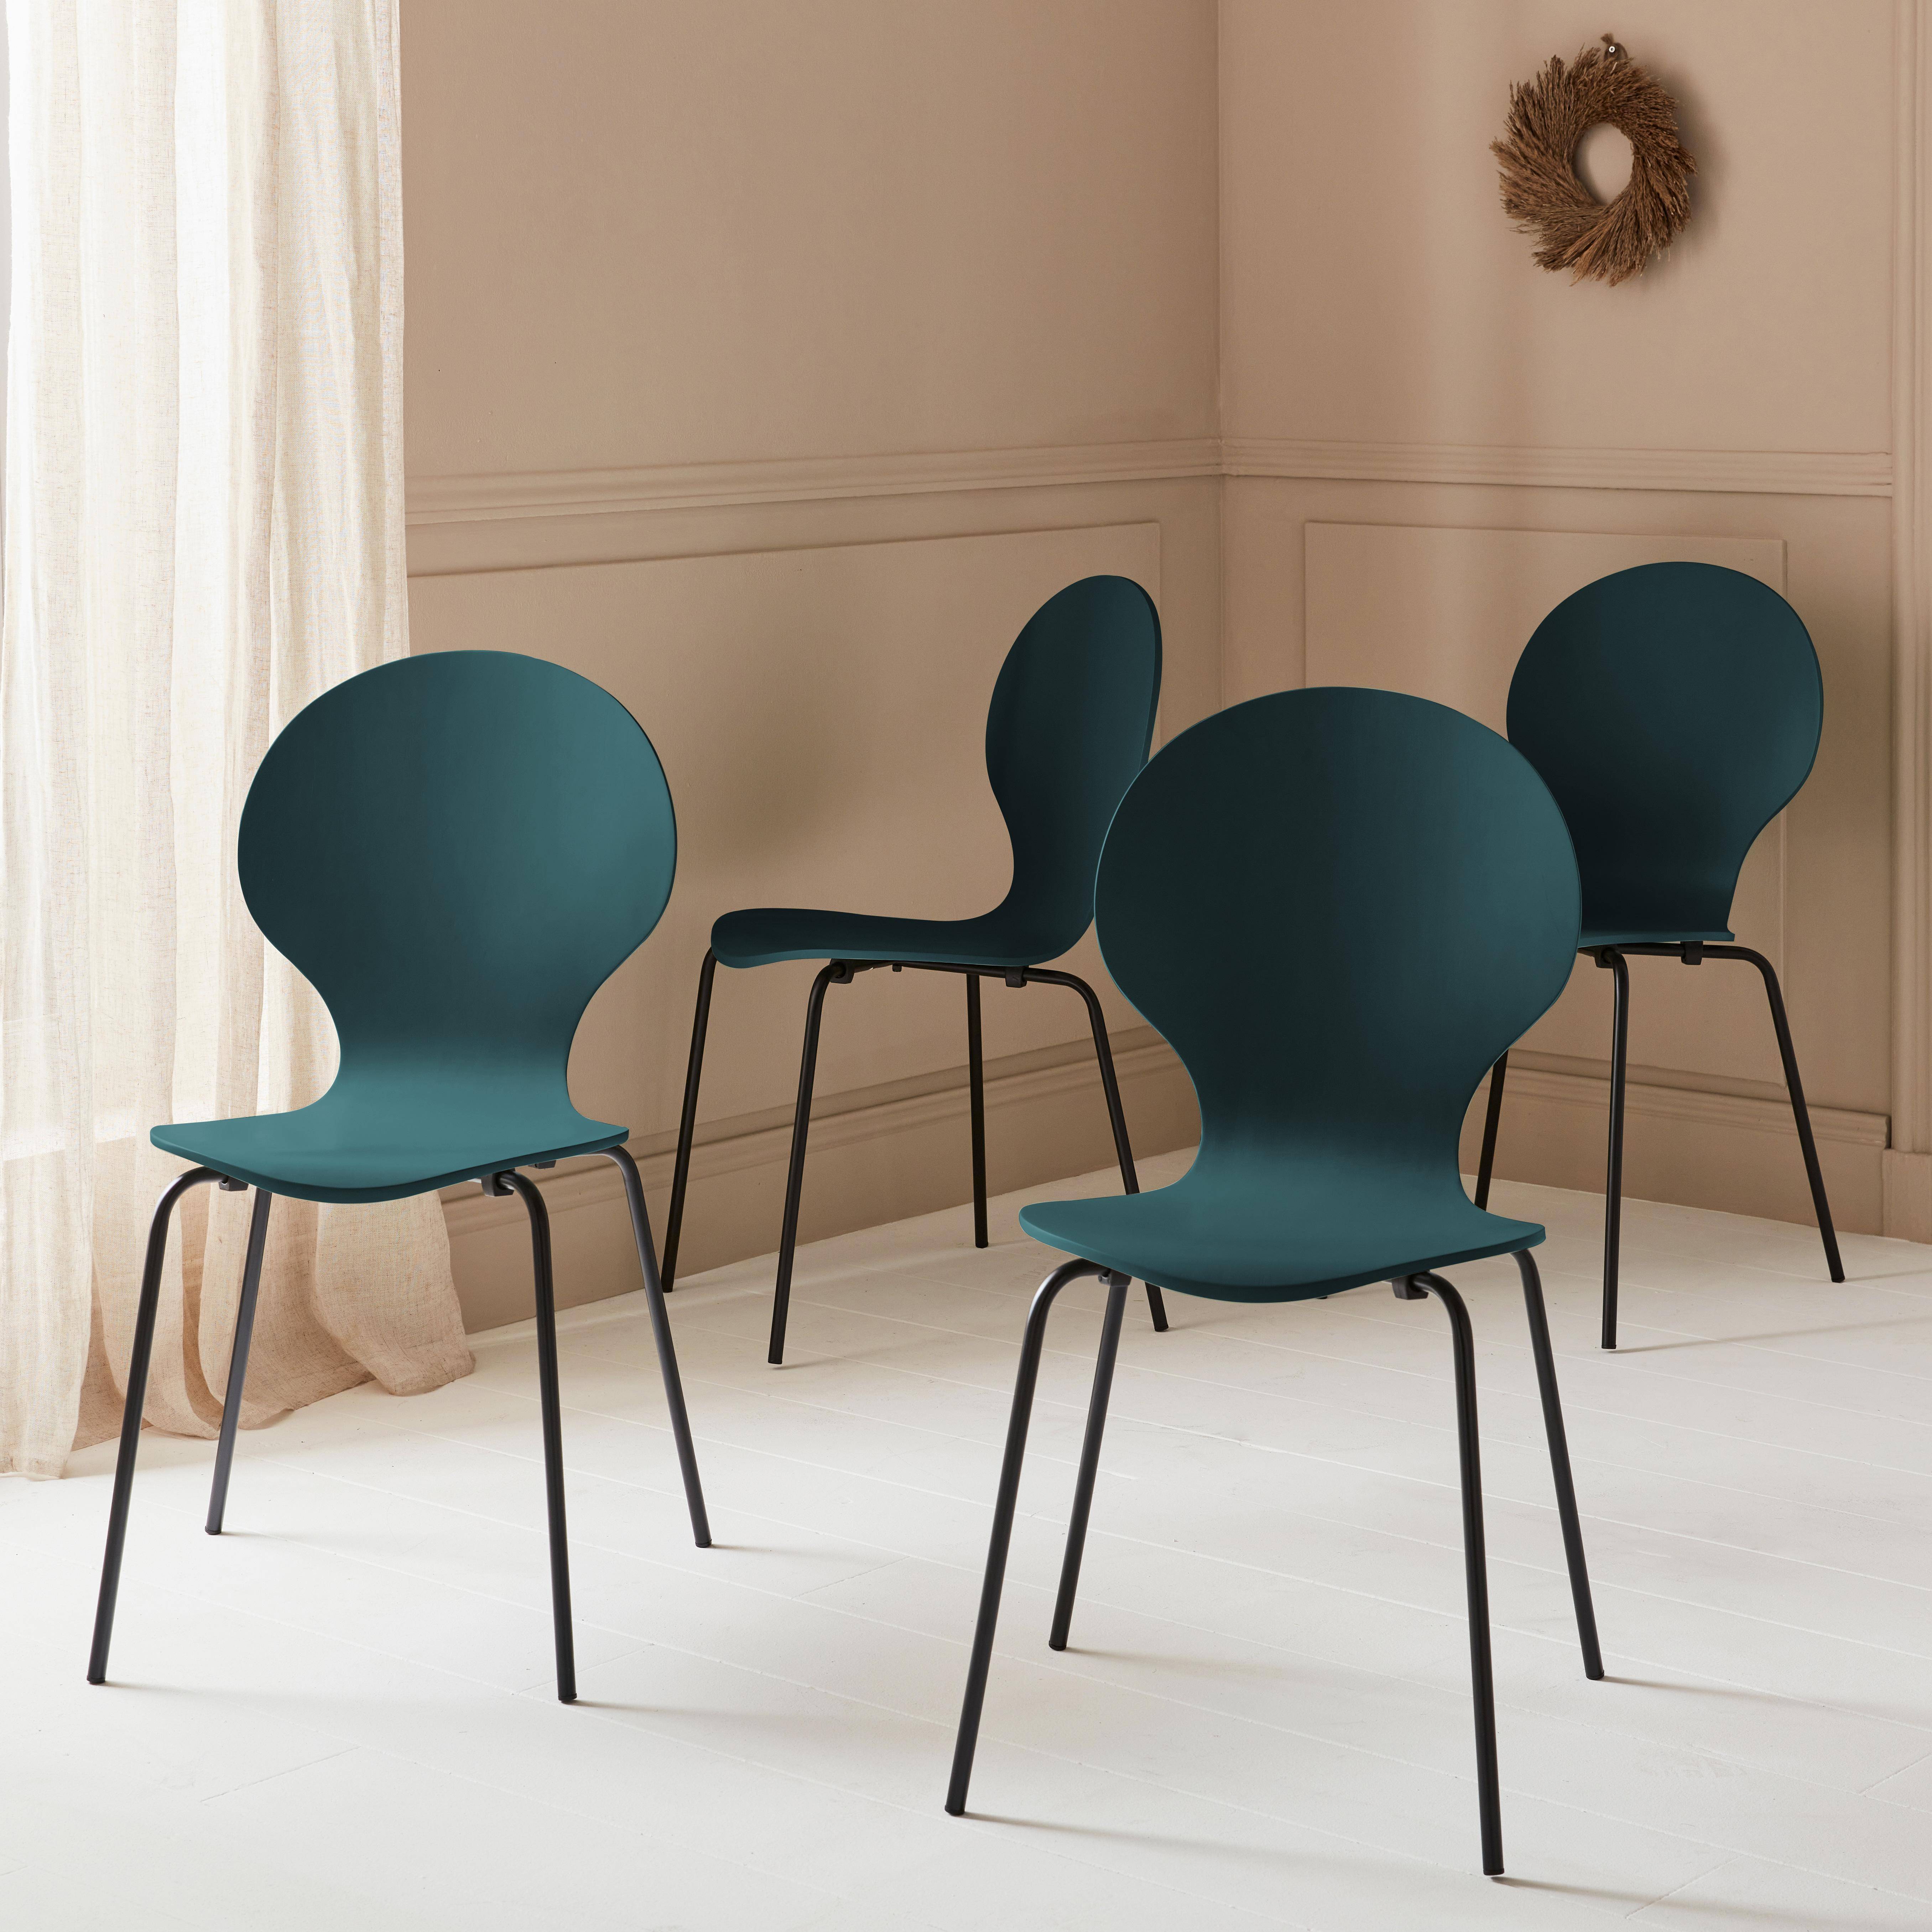 4er Set stapelbare Retro-Stühle in blau, Hevea-Holz und Sperrholz, Beine aus Stahl, Naomi, B 43 x T 48 x H 87cm,sweeek,Photo1